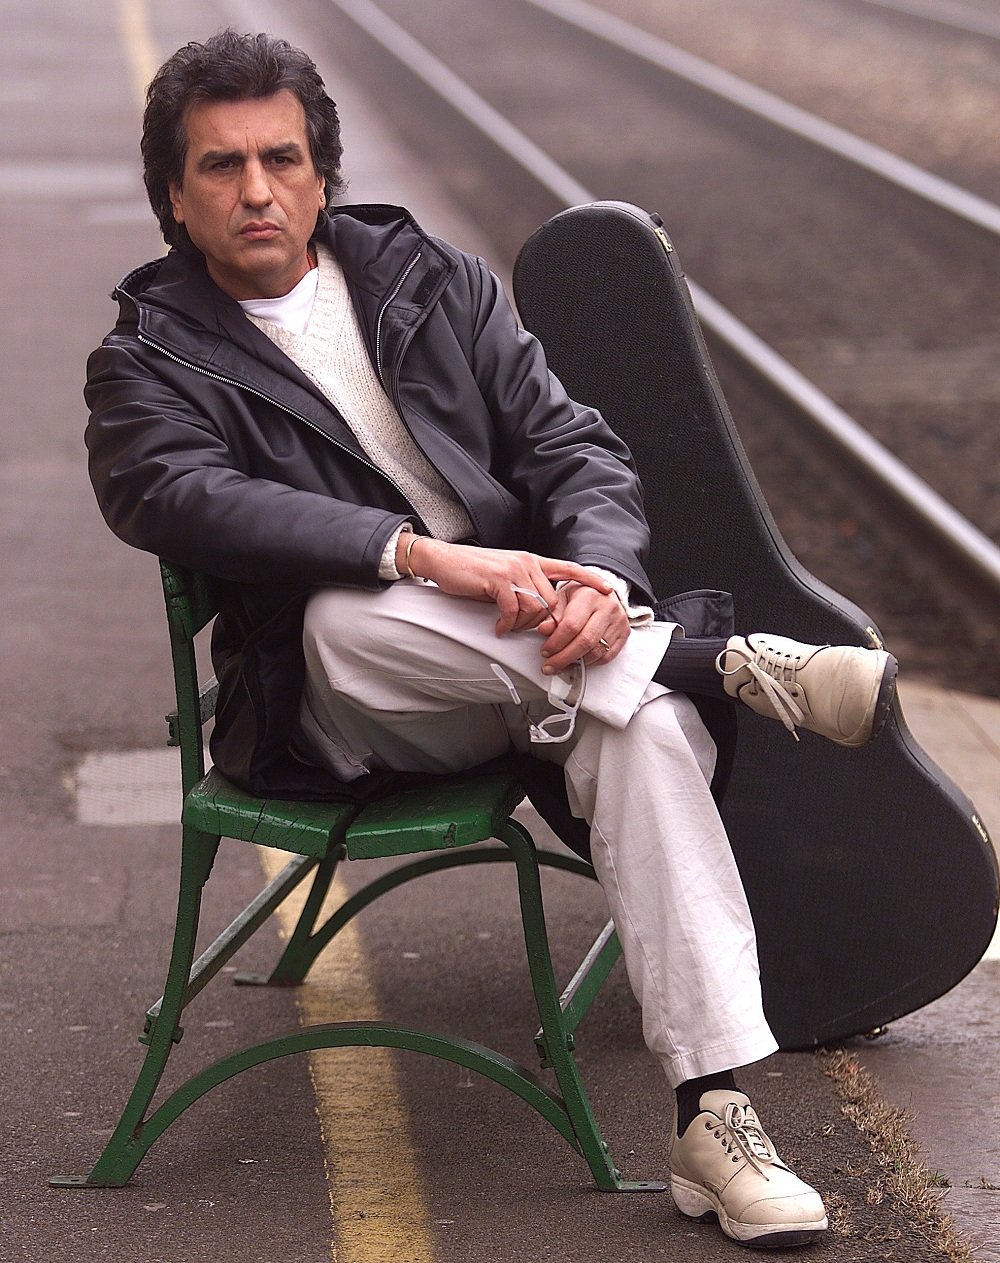 Toto Cutugno age, hometown, biography | Last.fm